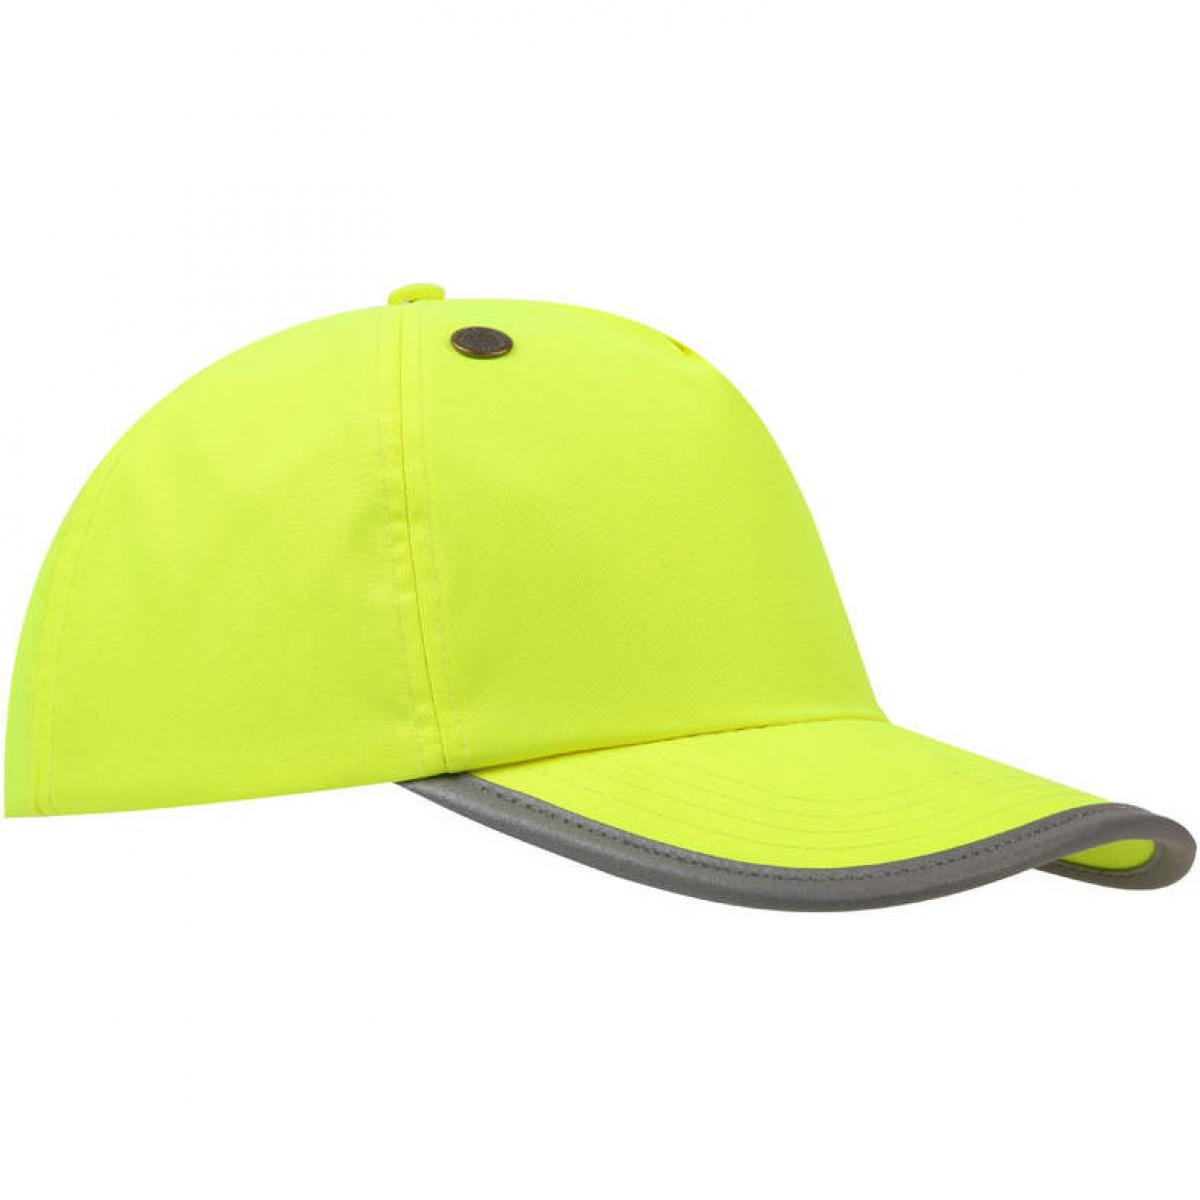 Hersteller: YOKO Herstellernummer: TFC100 Artikelbezeichnung: Safety Bump Cap - Industrie-Schutzhelm Farbe: Fluo Yellow